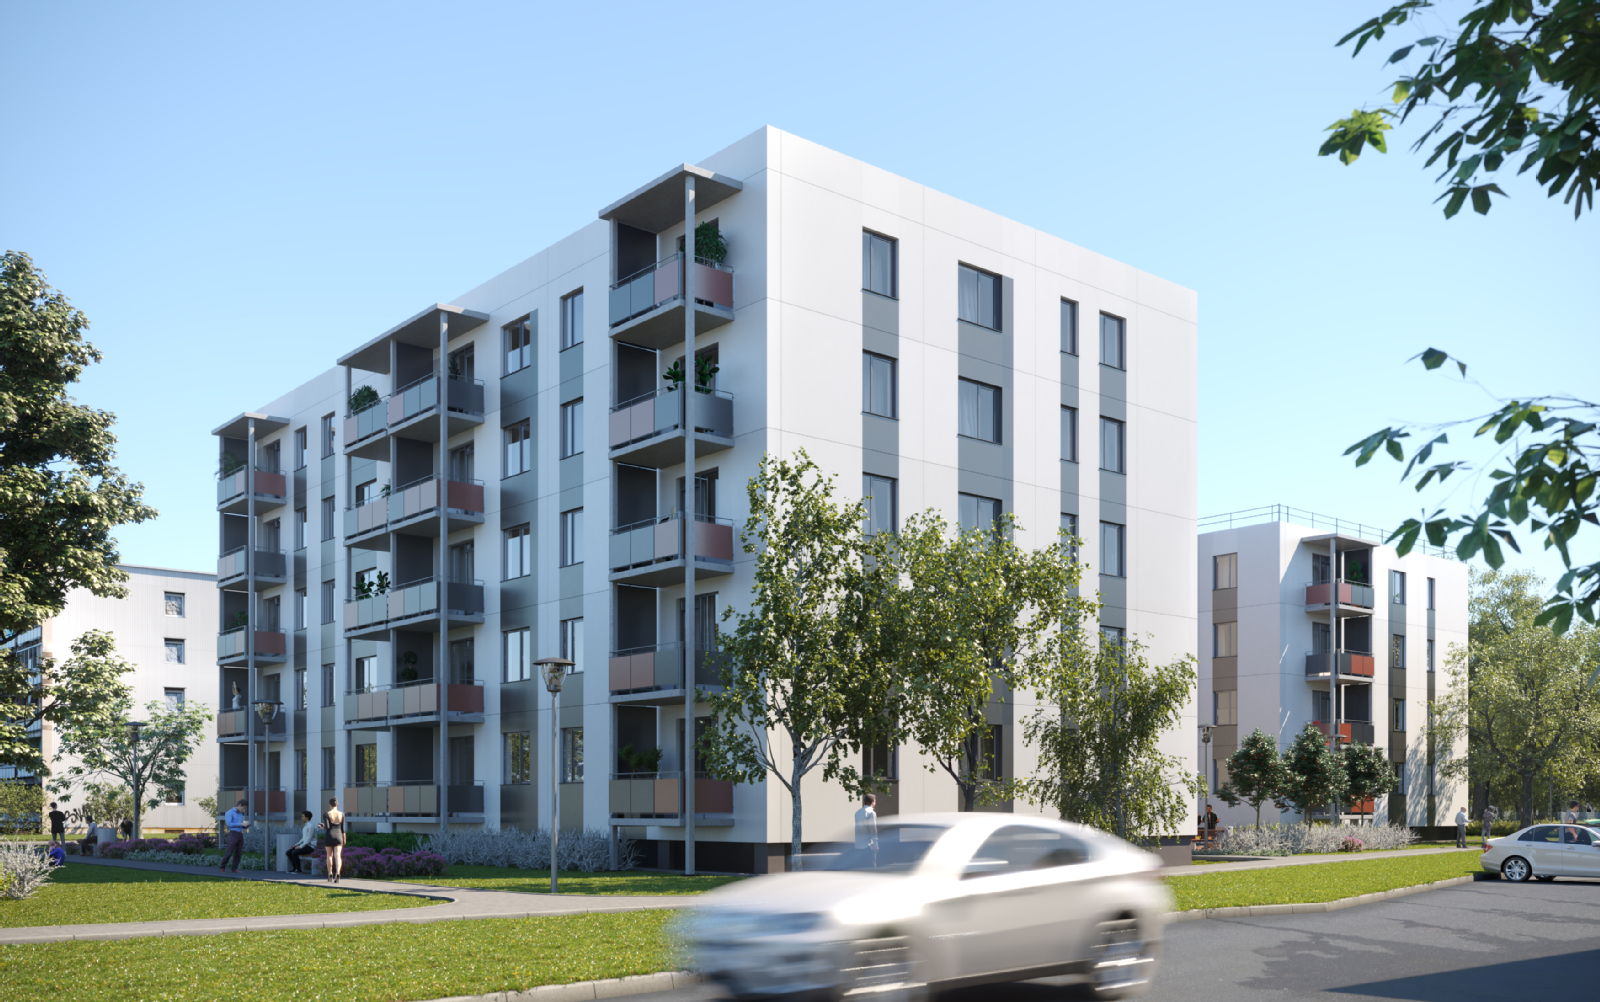 Uzsāk dzīvokļu rezervāciju YIT Celtniecība jaunajā projektā Dzirciema nams - Nekustamo īpašumu ziņas - City24.lv nekustamo īpašumu sludinājumu portāls